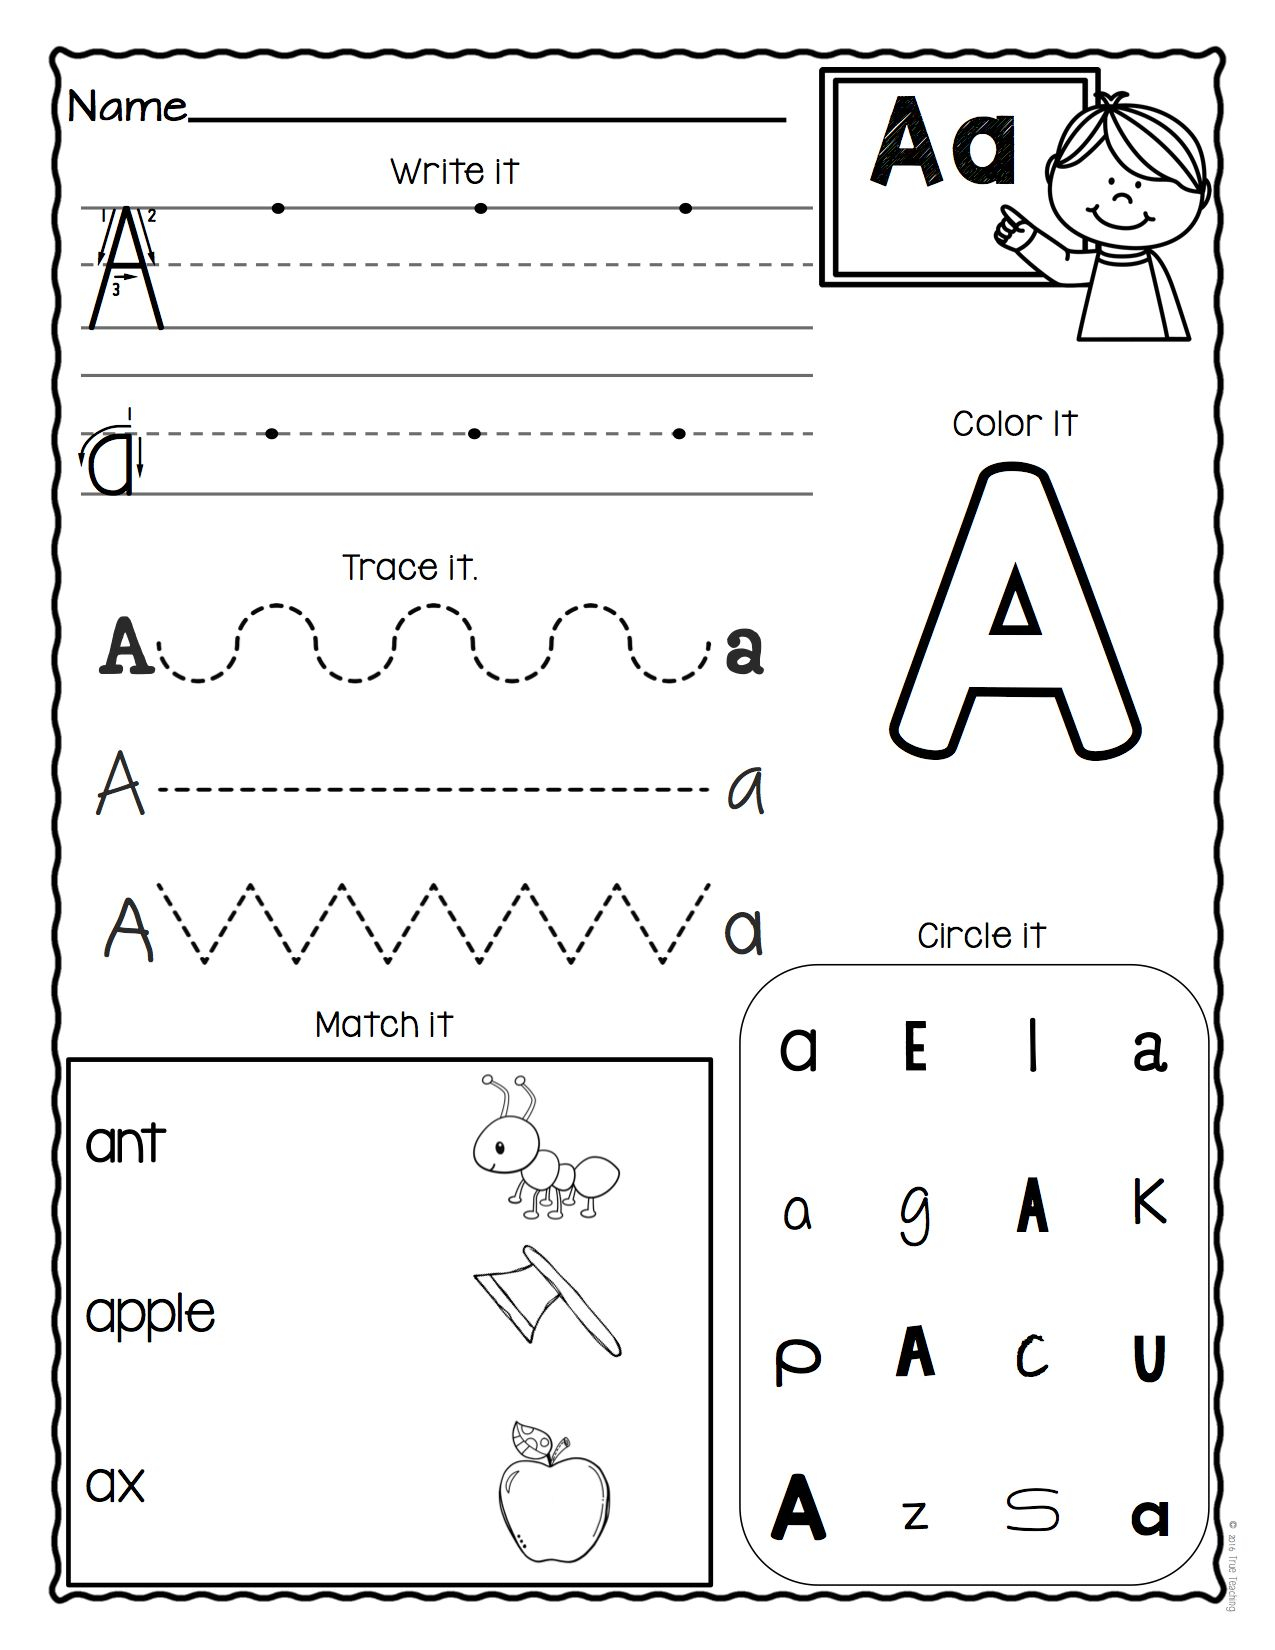 A-Z Letter Worksheets (Set 3) | Alphabet Worksheets intended for A-Z Alphabet Worksheets